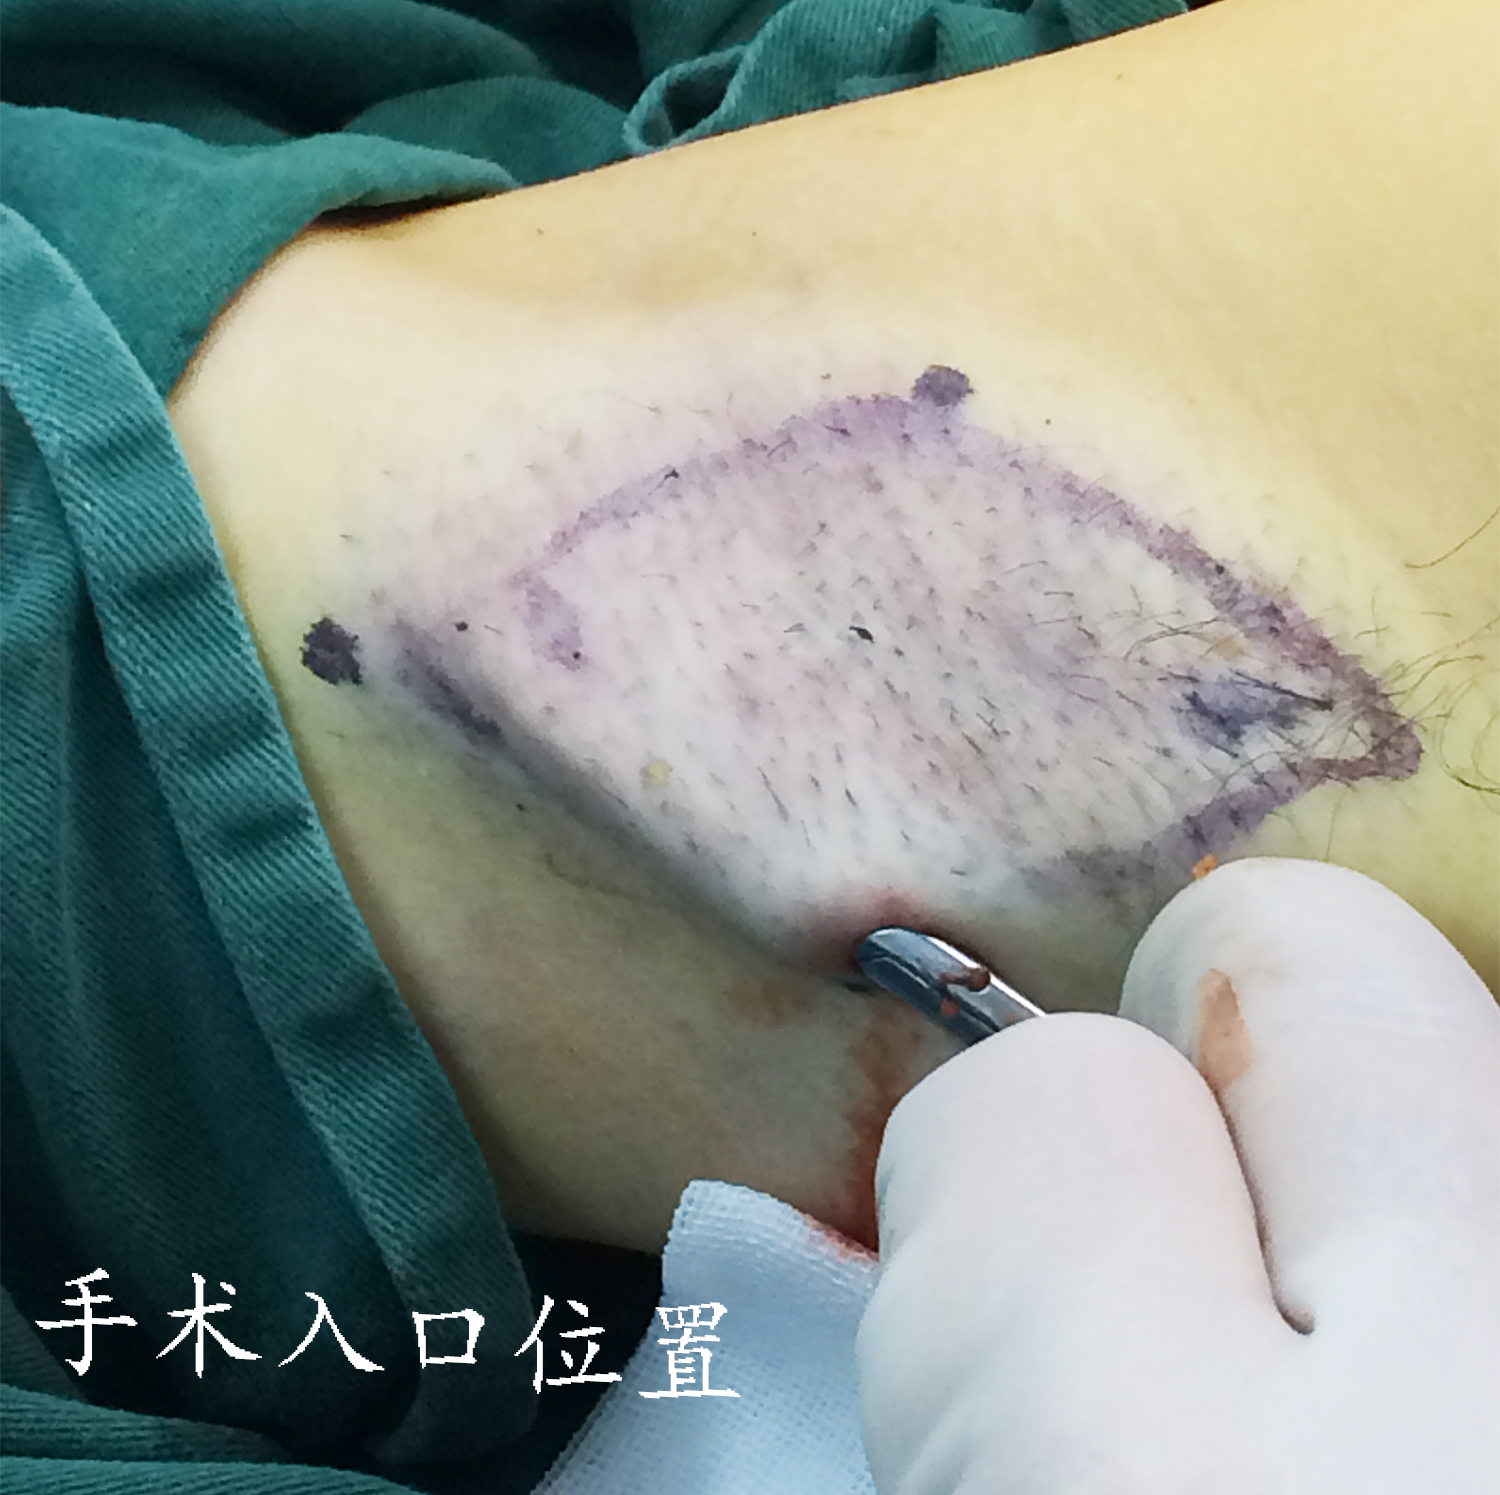 注意:划线部分不是手术伤口大小,而是皮下需要治疗的范围,手术使用